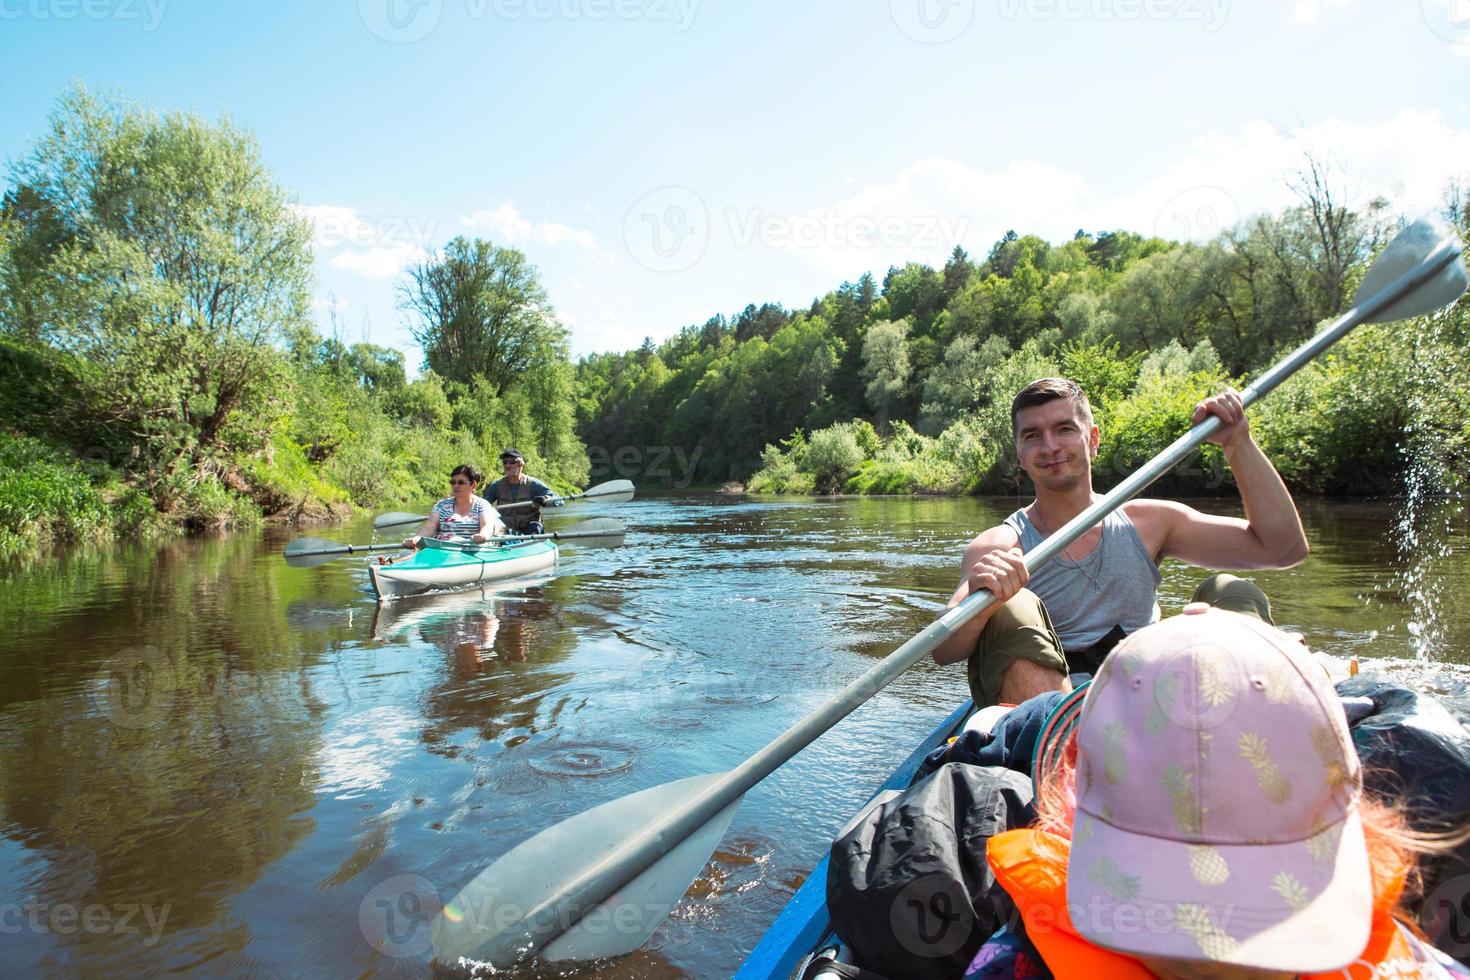 balade en kayak en famille. père et fille, et couple de personnes âgées senior et senior un bateau à rames sur la rivière, une randonnée aquatique, une aventure estivale. tourisme écologique et extrême, mode de vie actif et sain photo